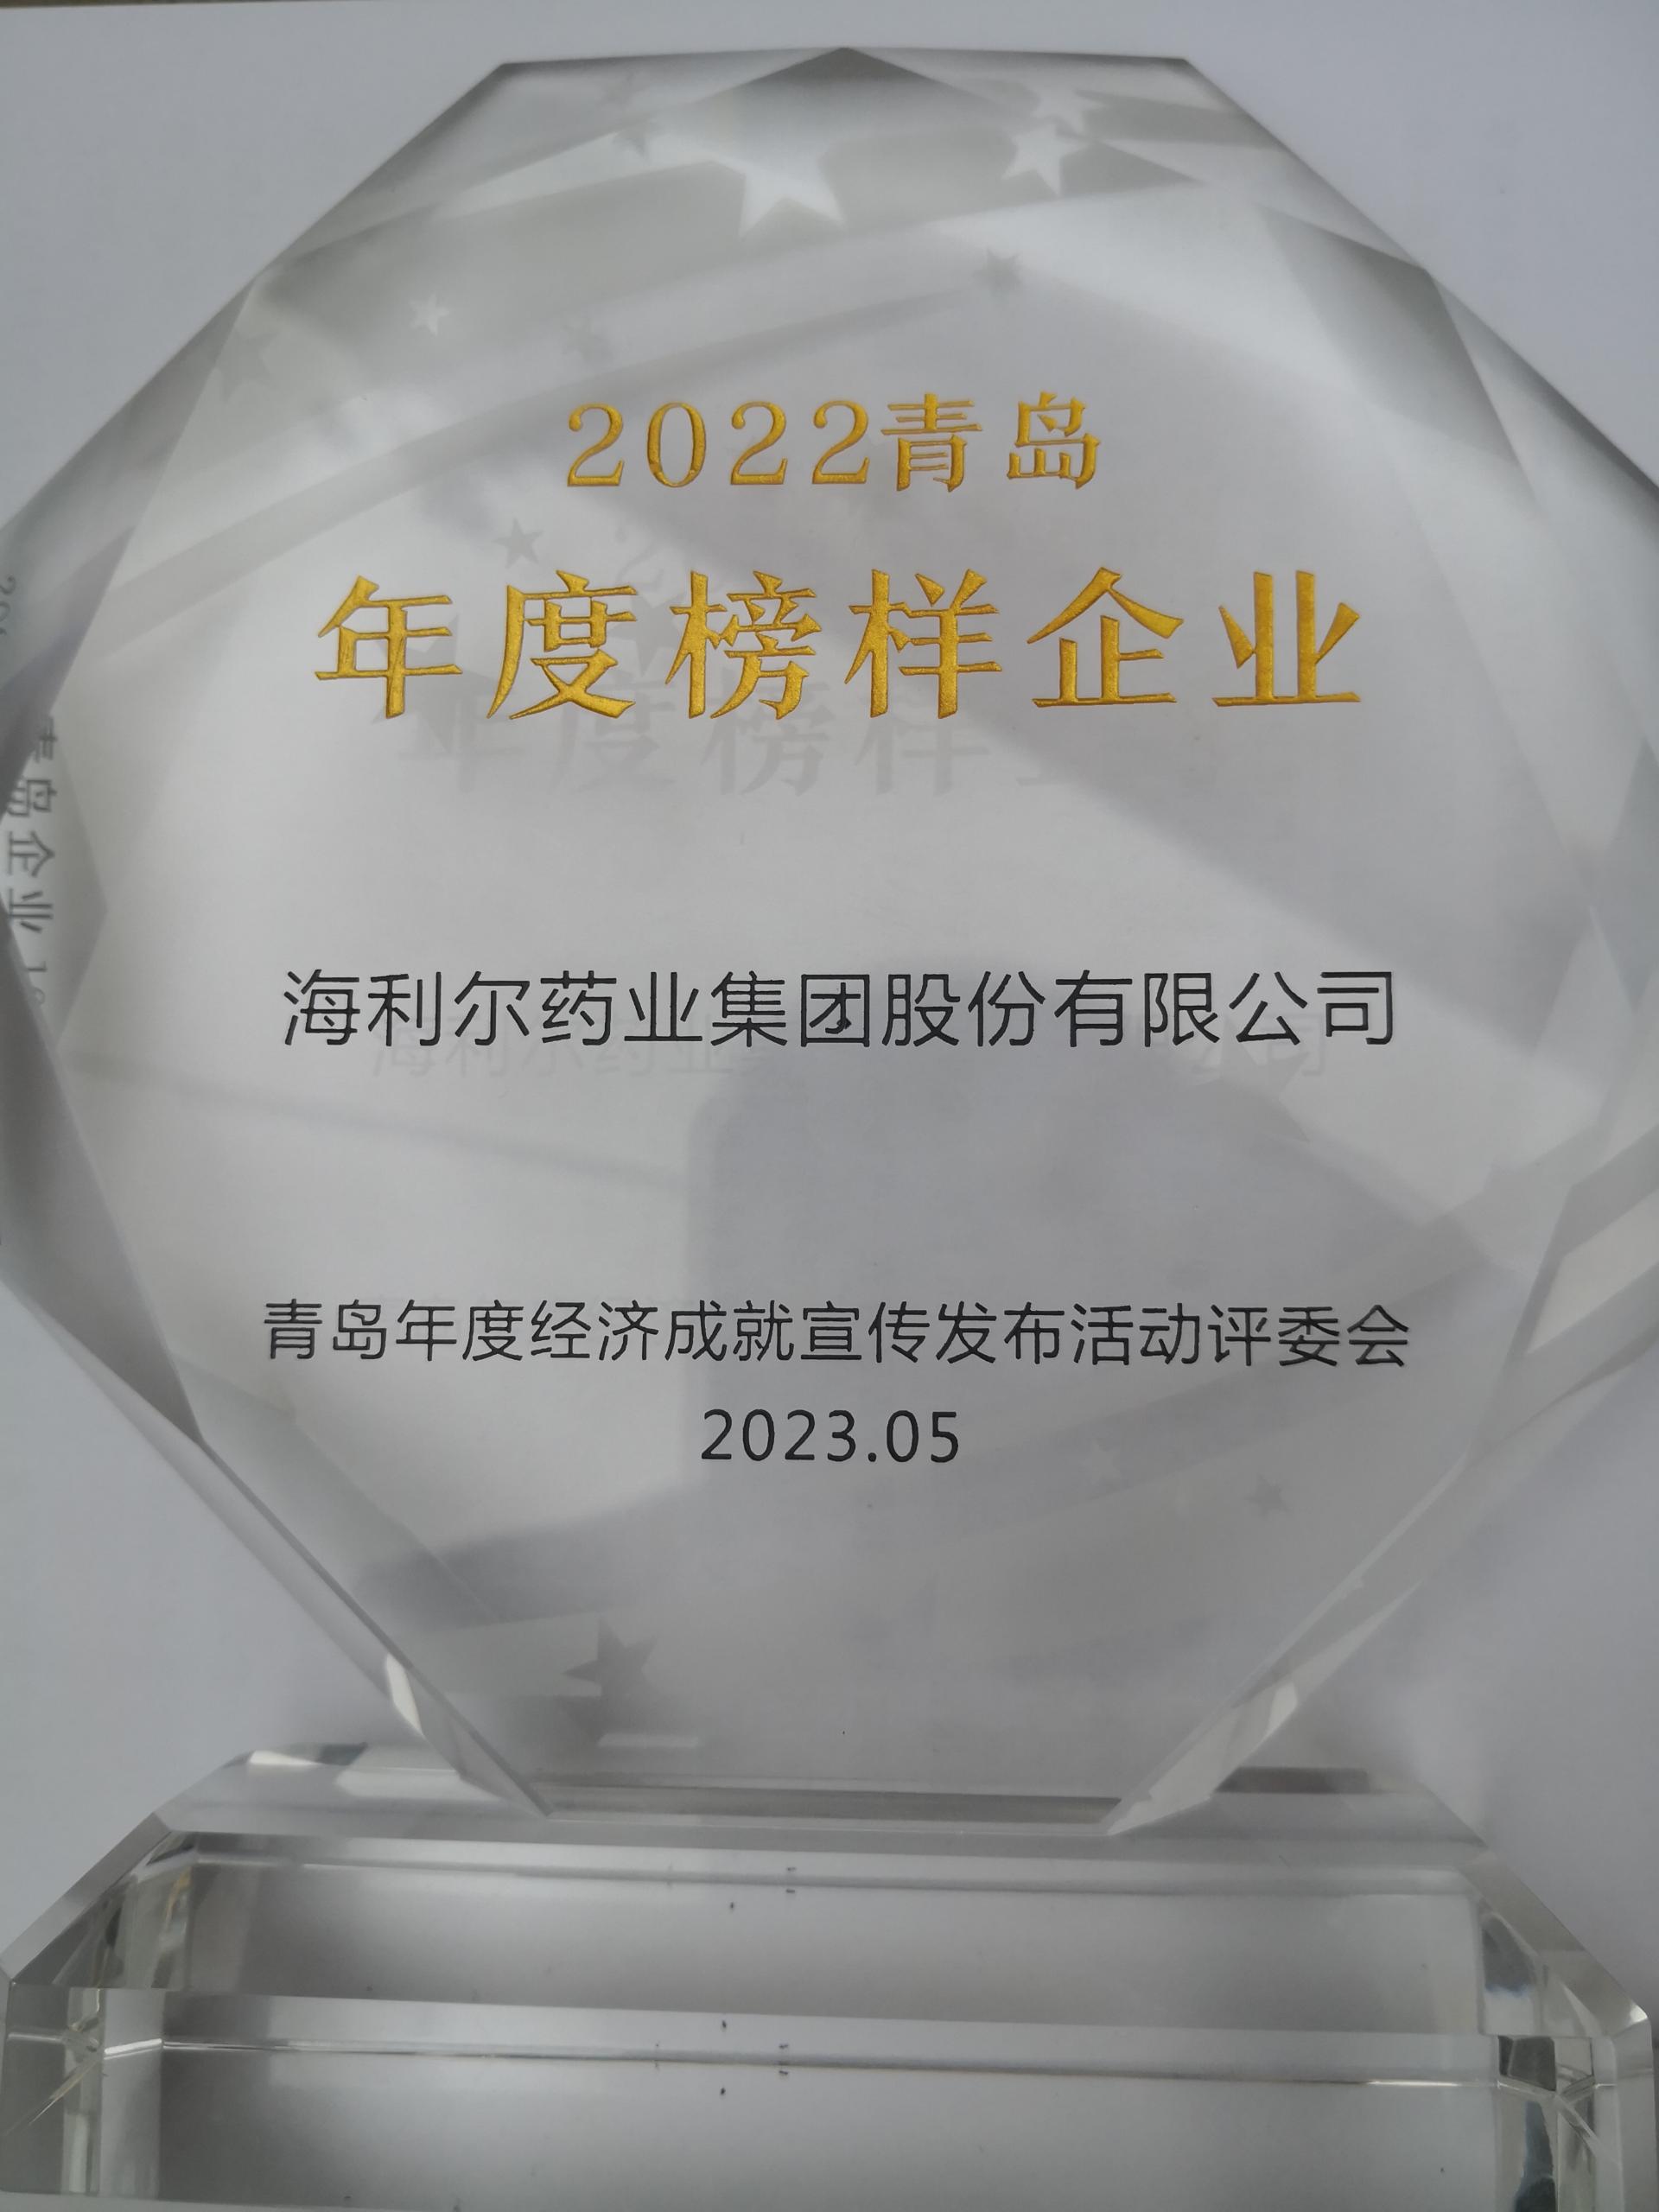 祝賀！集團獲評2022青島年度榜樣企業